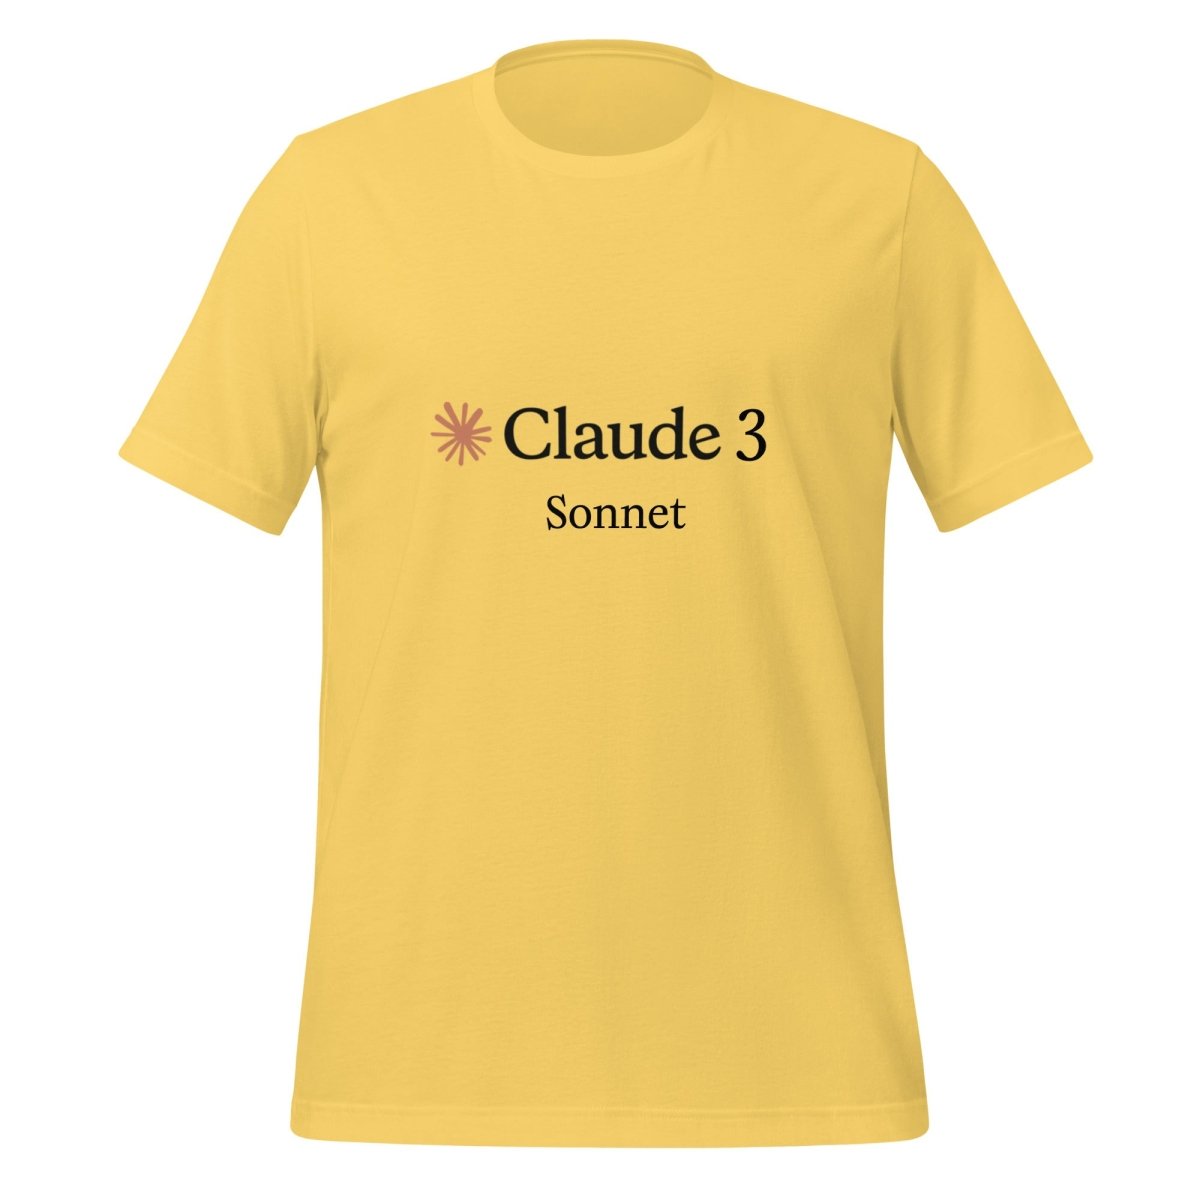 Claude 3 Sonnet T - Shirt (unisex) - Yellow - AI Store